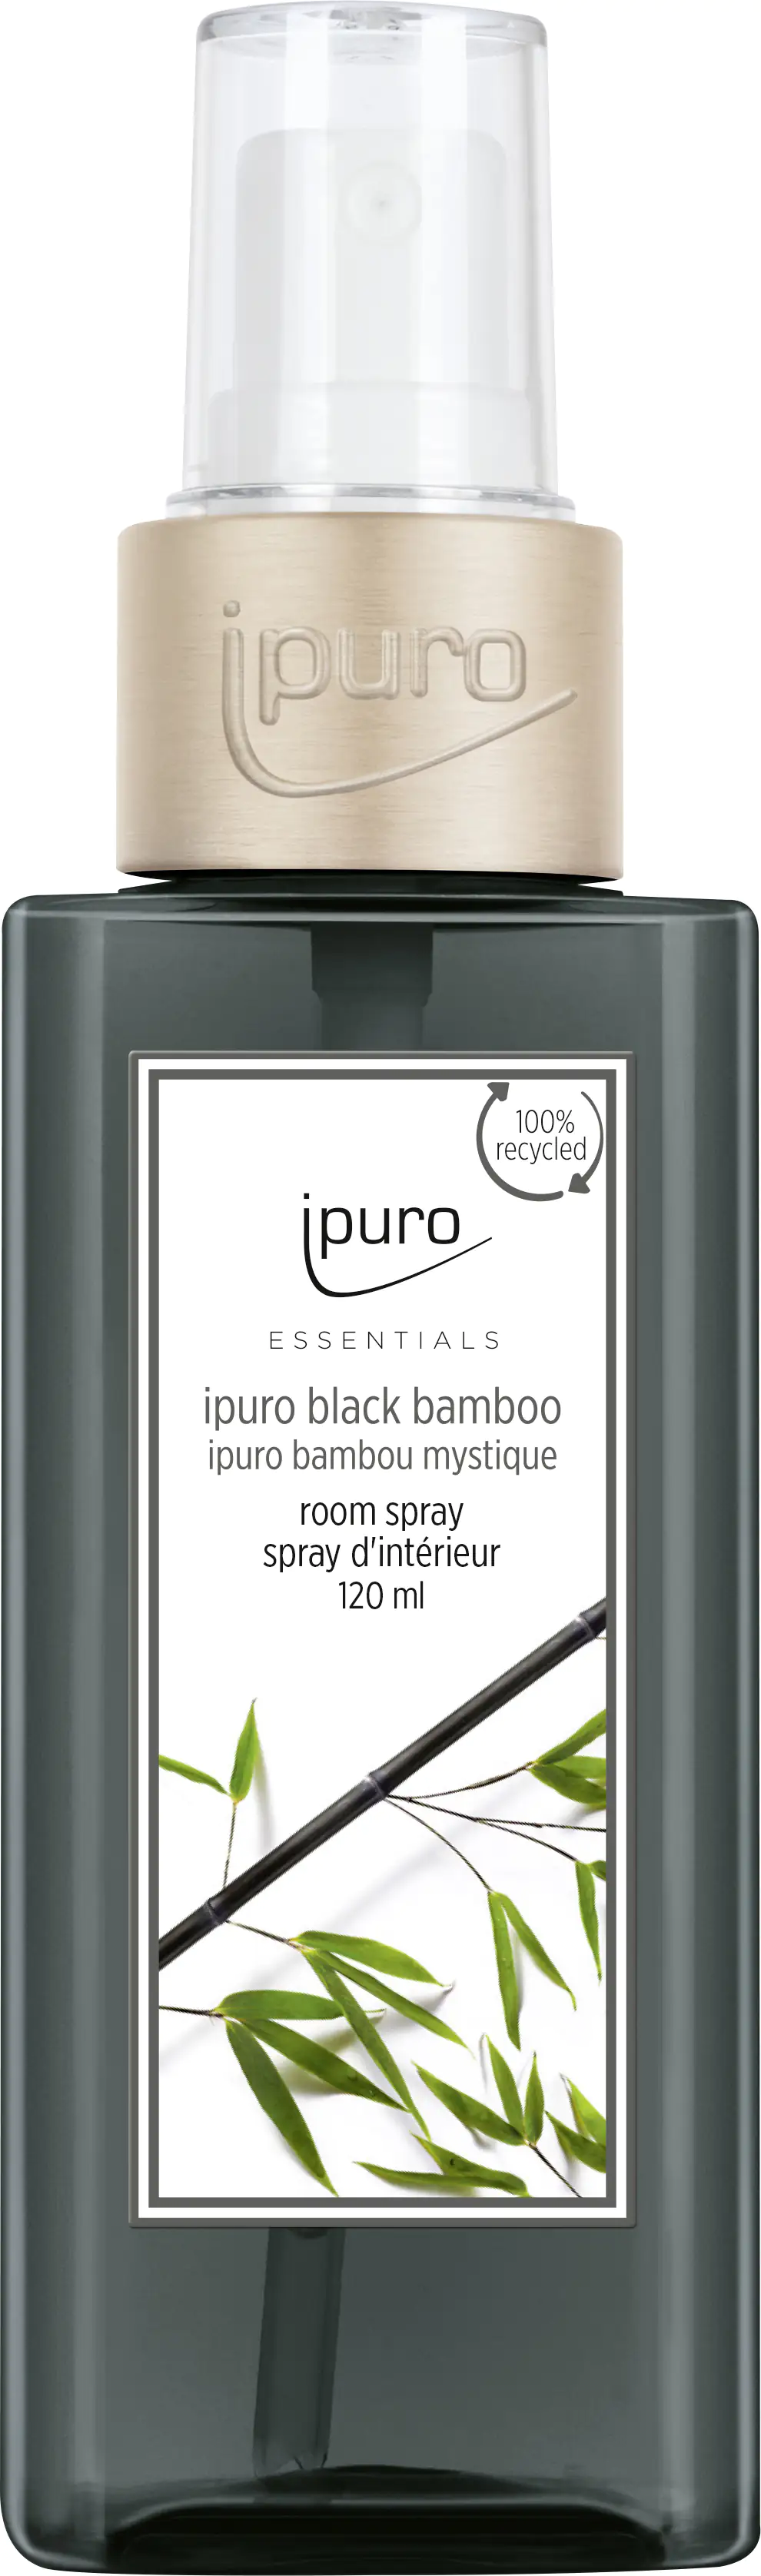 ipuro ESSENTIALS Raumspray Black Bamboo 120 ml kaufen